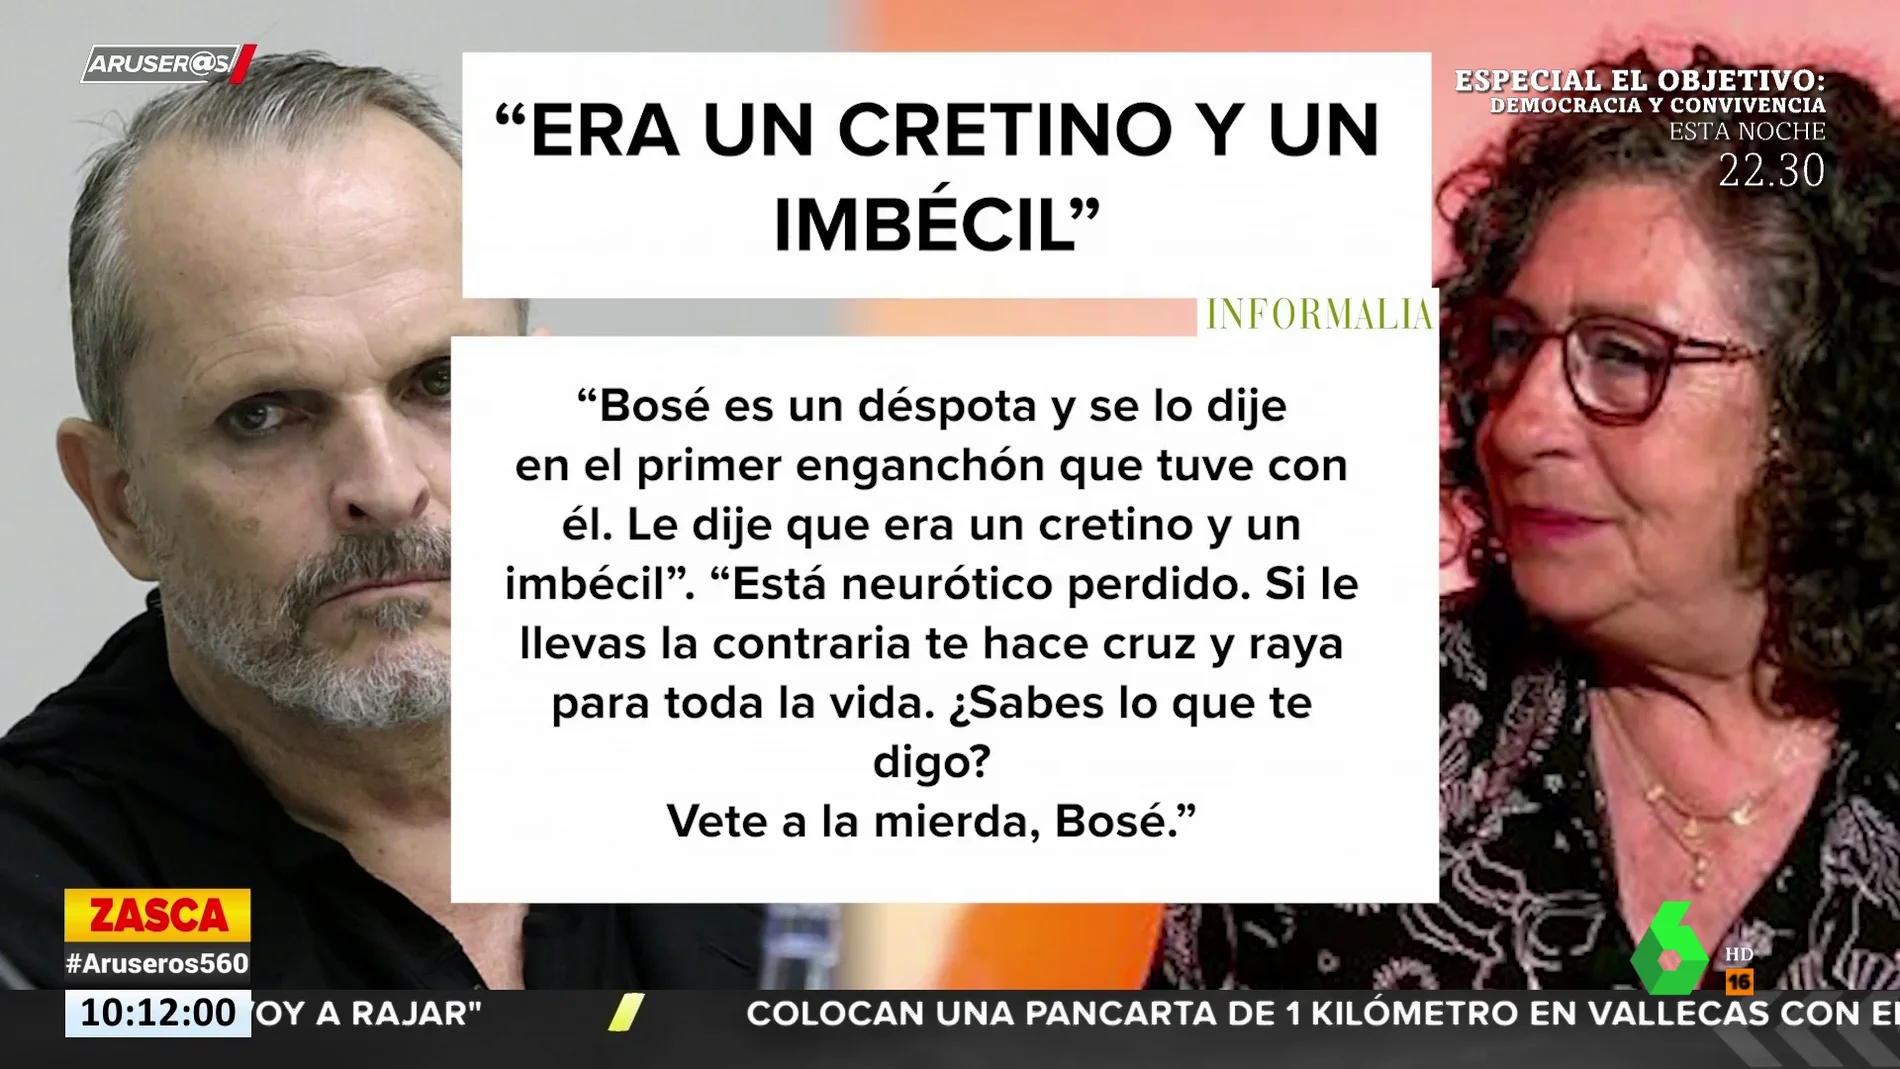 La exsuegra de Miguel Bosé carga contra él: "Era un cretino y un imbécil. Vete la mierda Bosé"